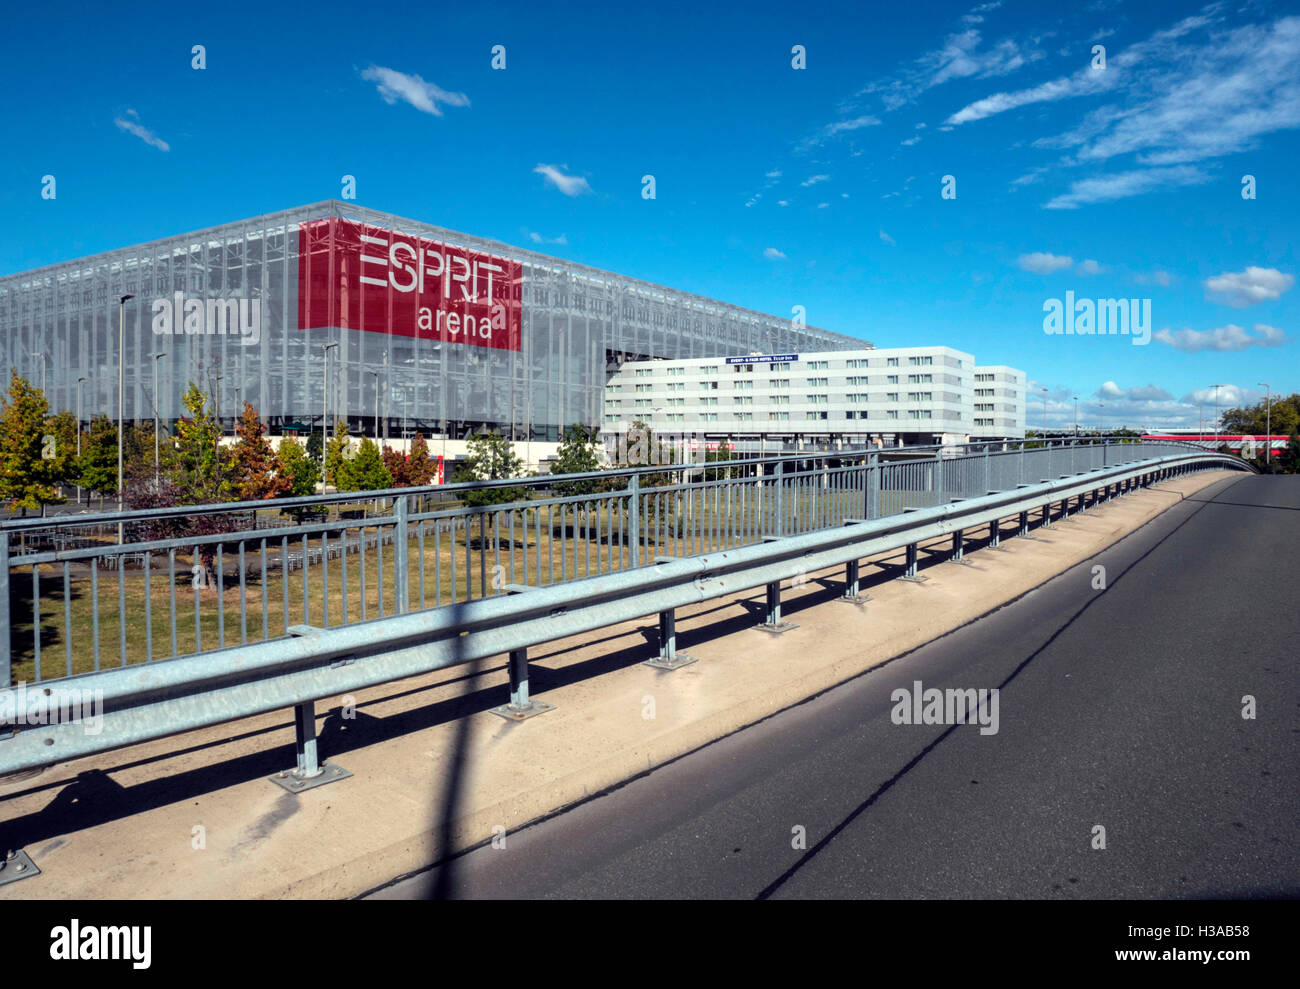 Esprit Arena in Dusseldorf Stock Photo - Alamy